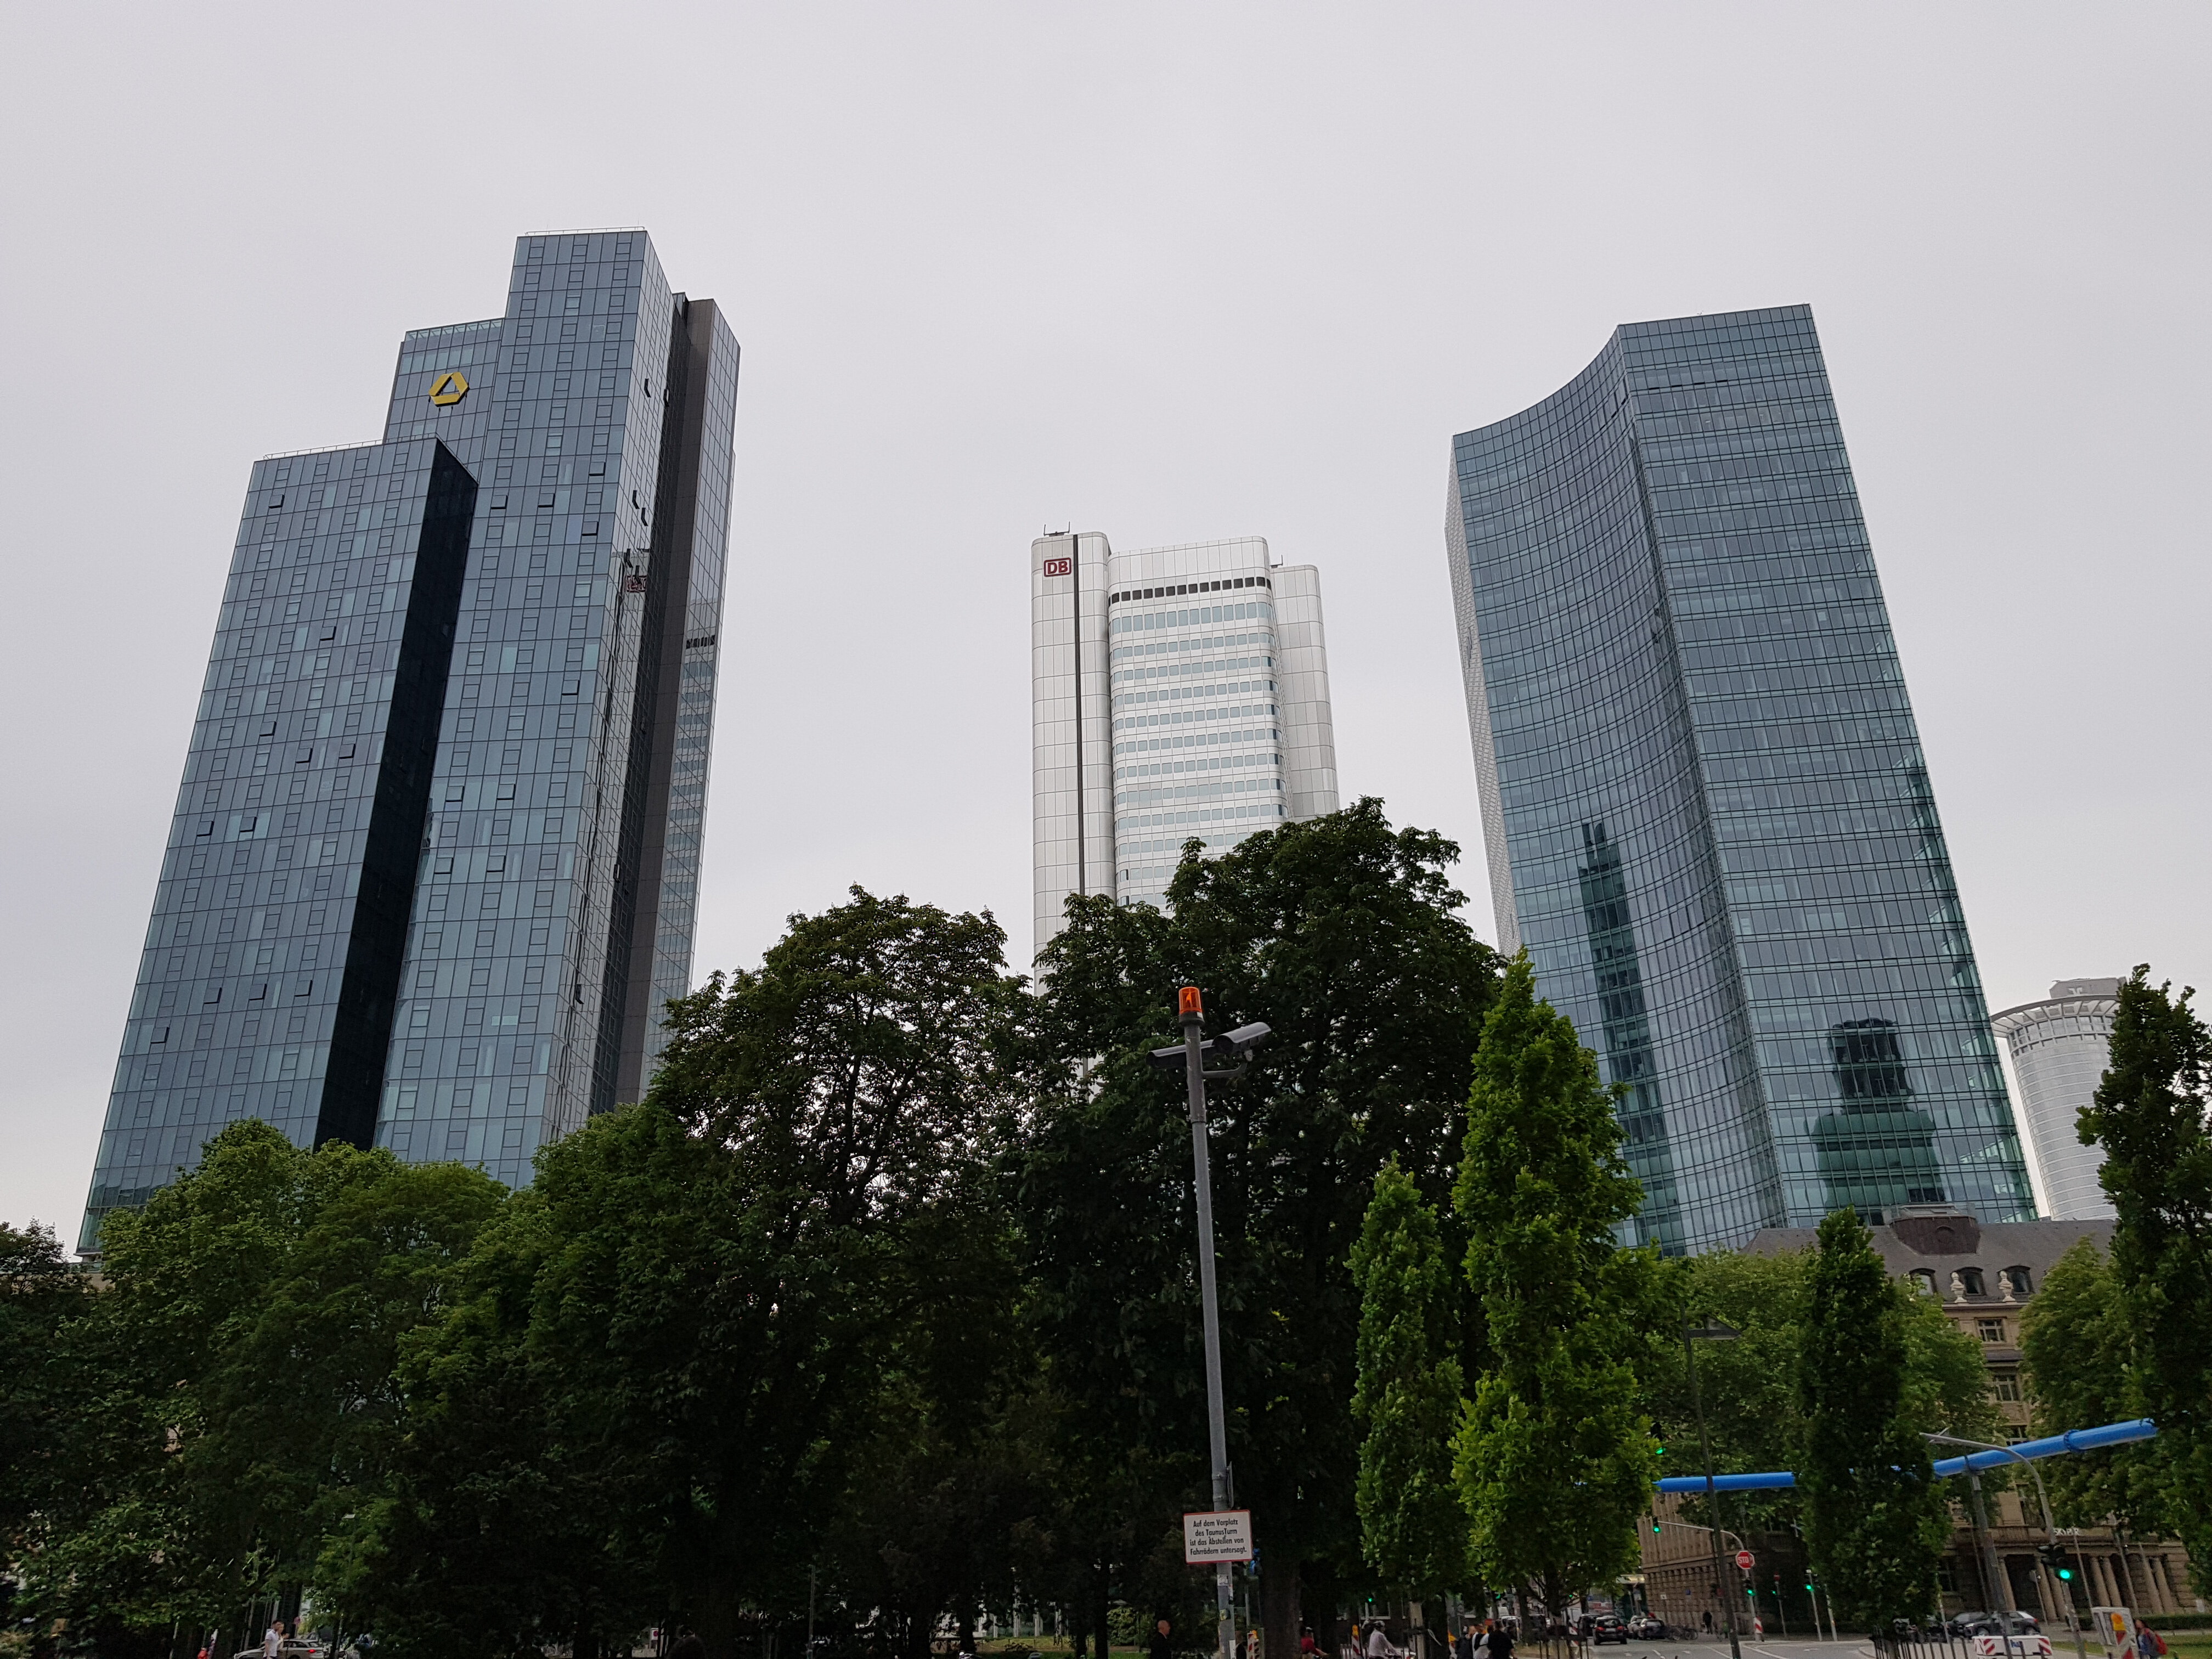 Wolkenkratzer in Frankfurt